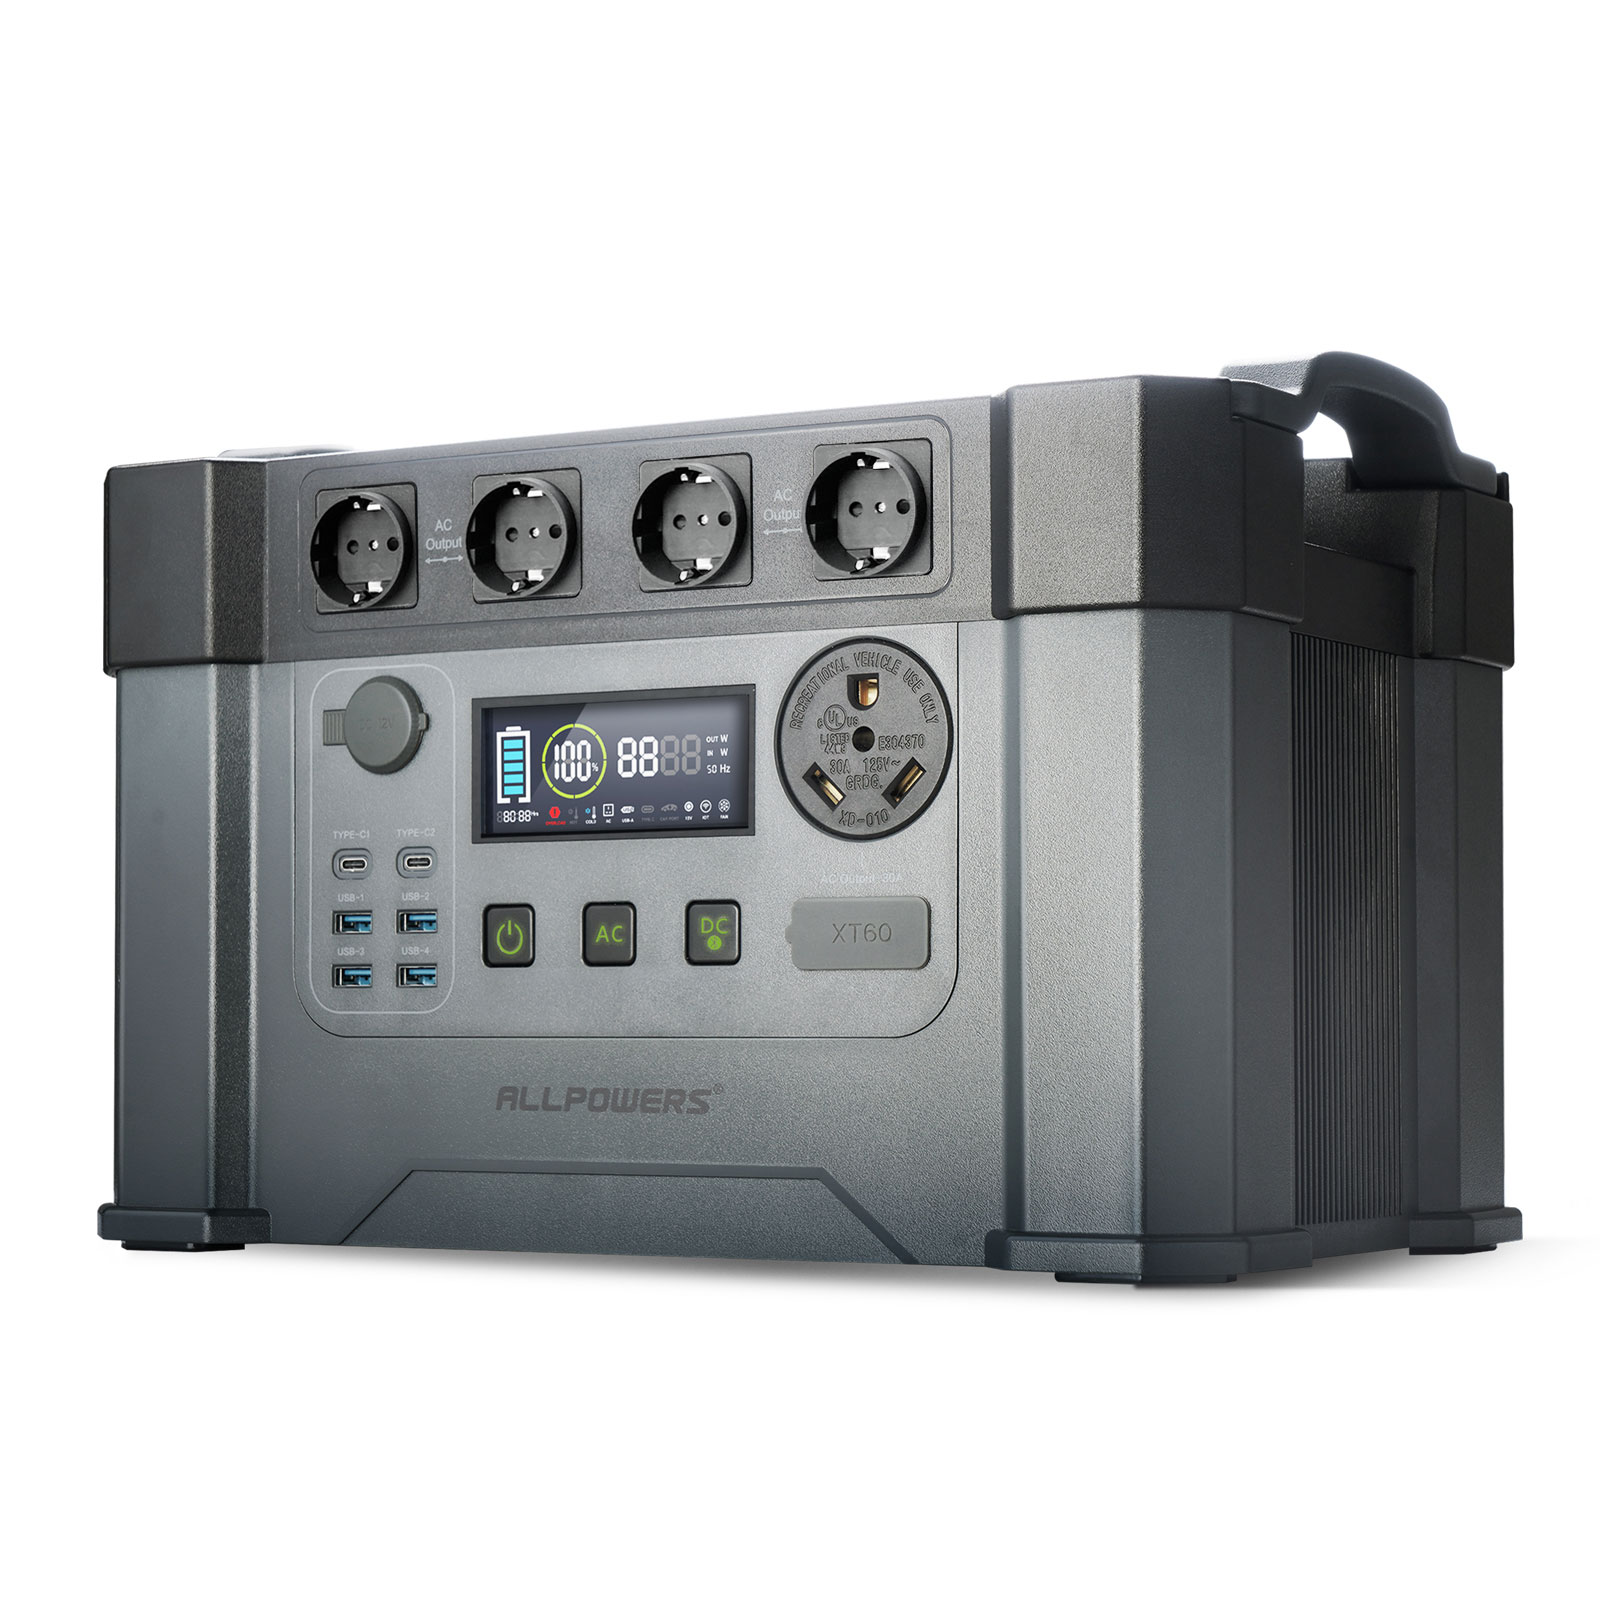 OUKITEL Générateur Électrique Portable P5000, 5120Wh LiFePO4